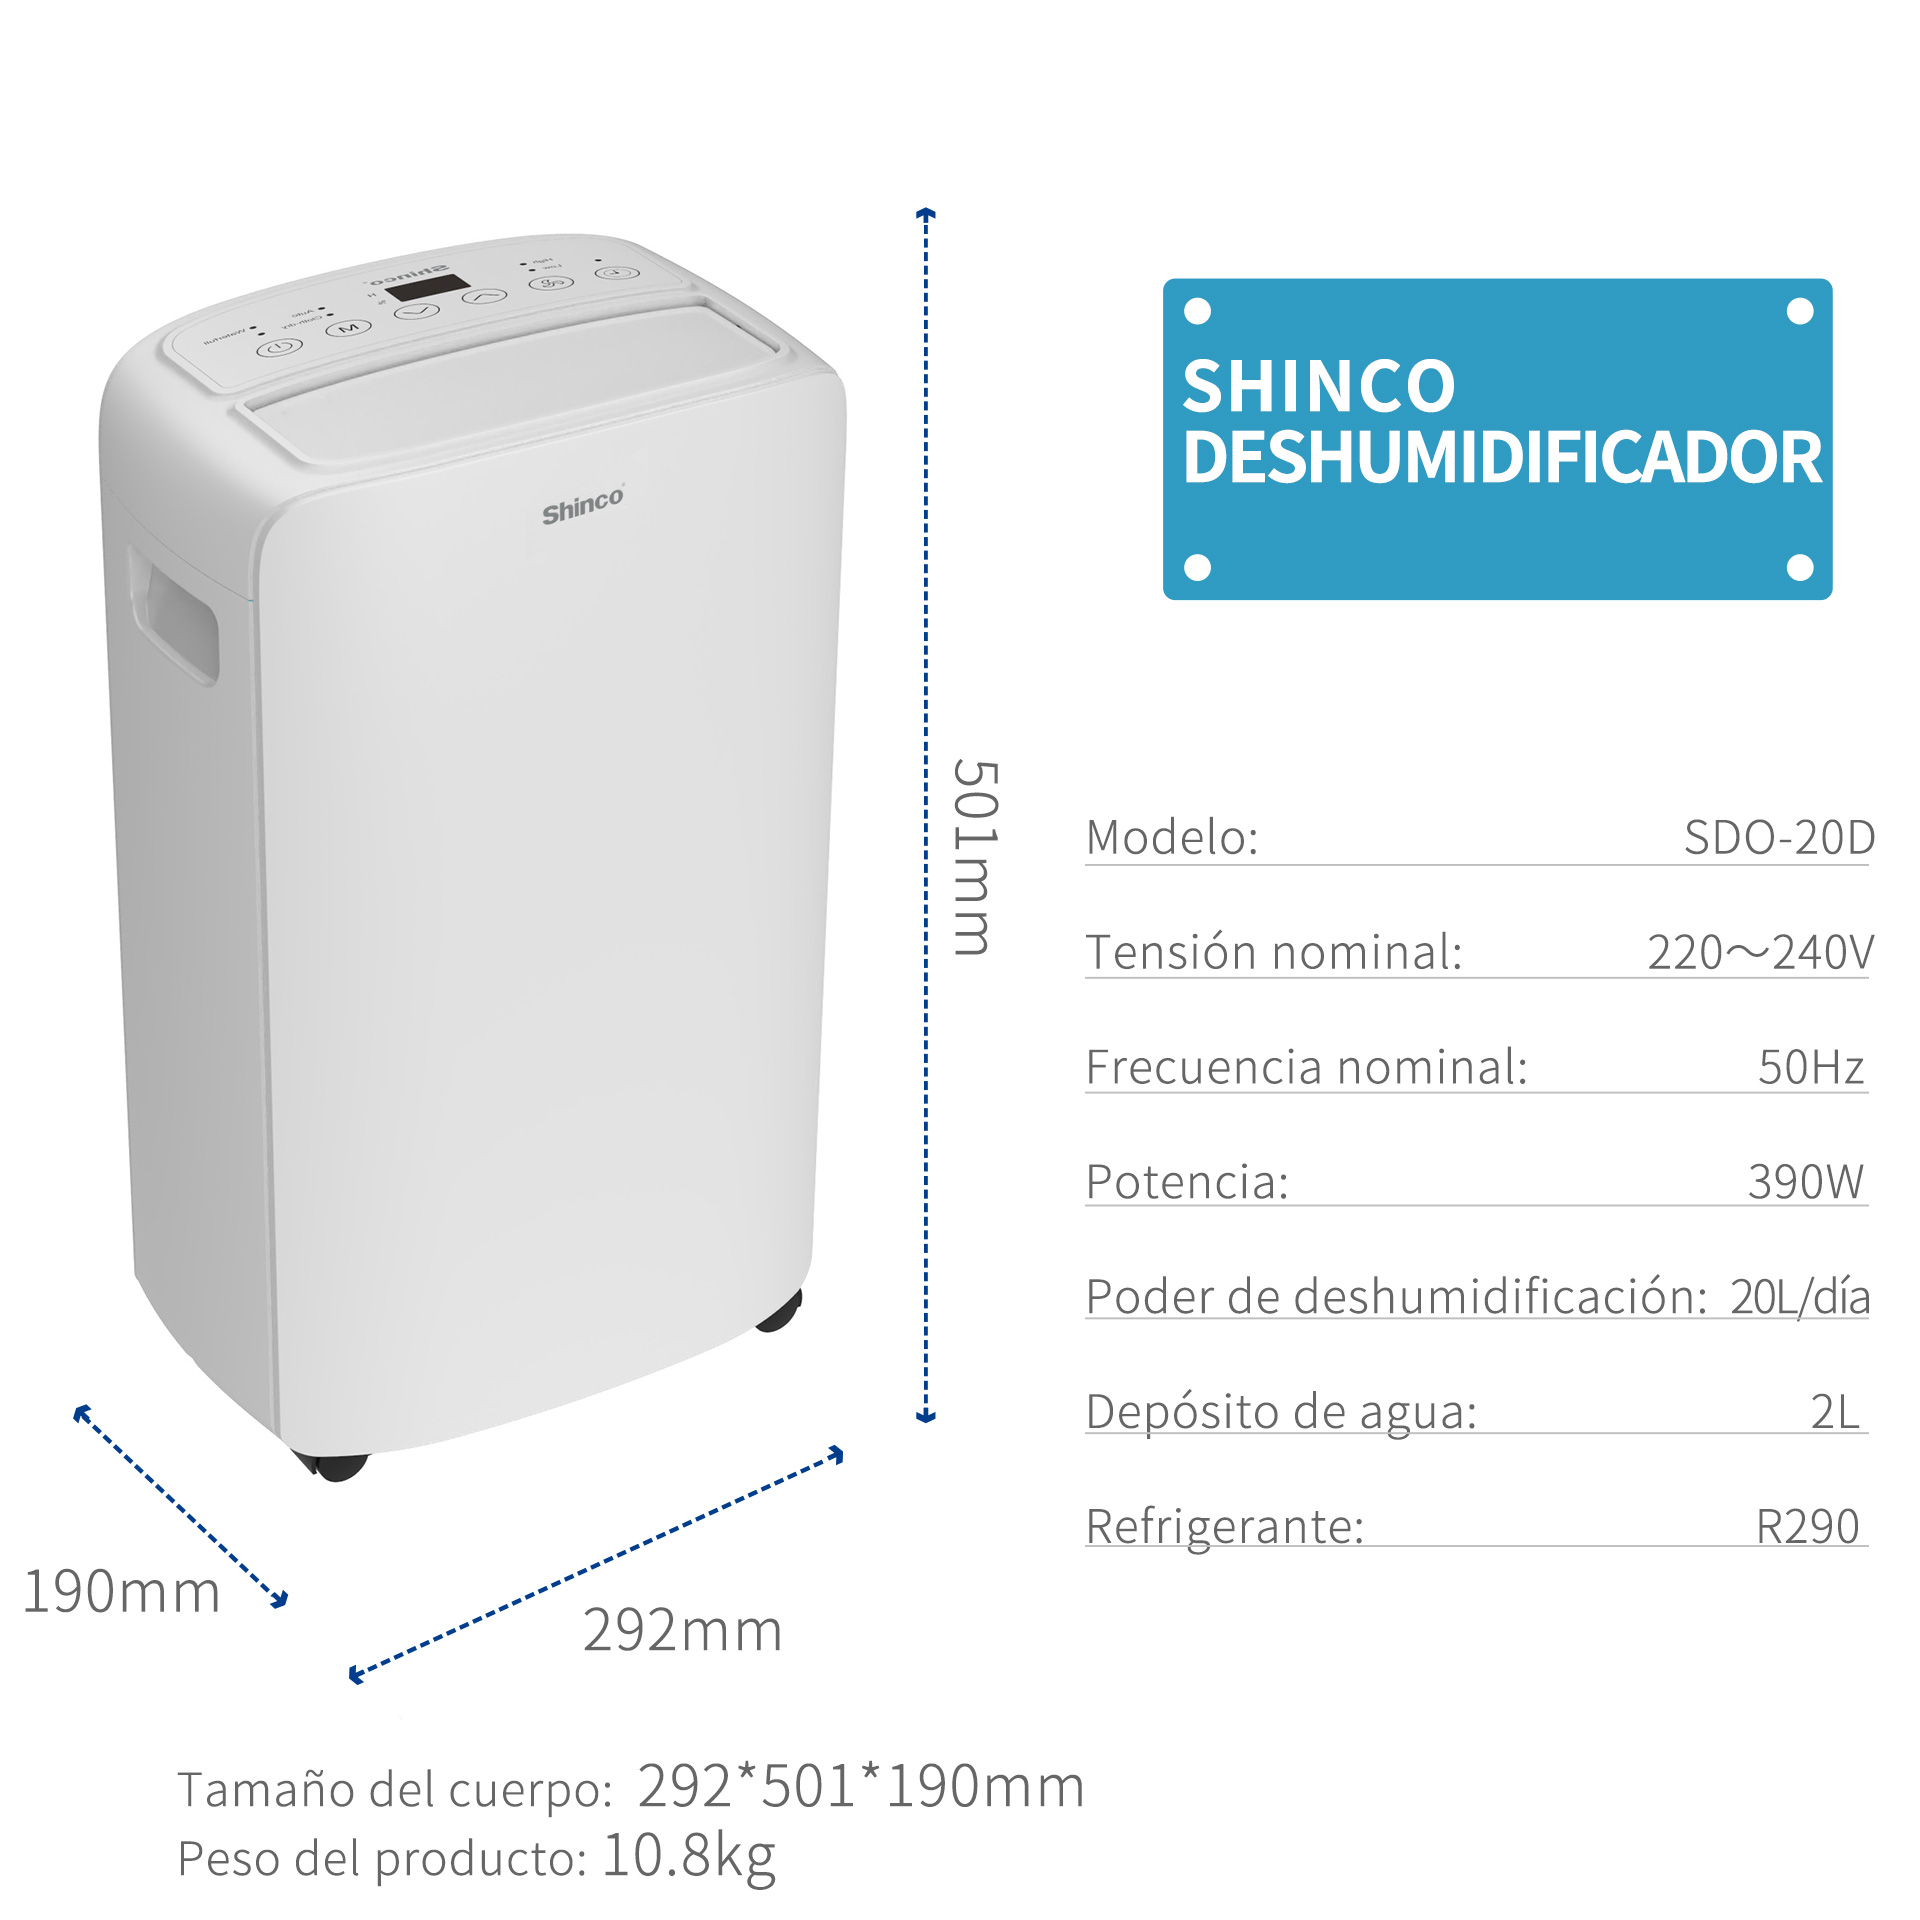 Nuevo refrigerante R290 de 20L DESHUMIDIFICADOR - China Home deshumidificador  20L/día deshumidificador y hasta el 24 de temporizadores precio